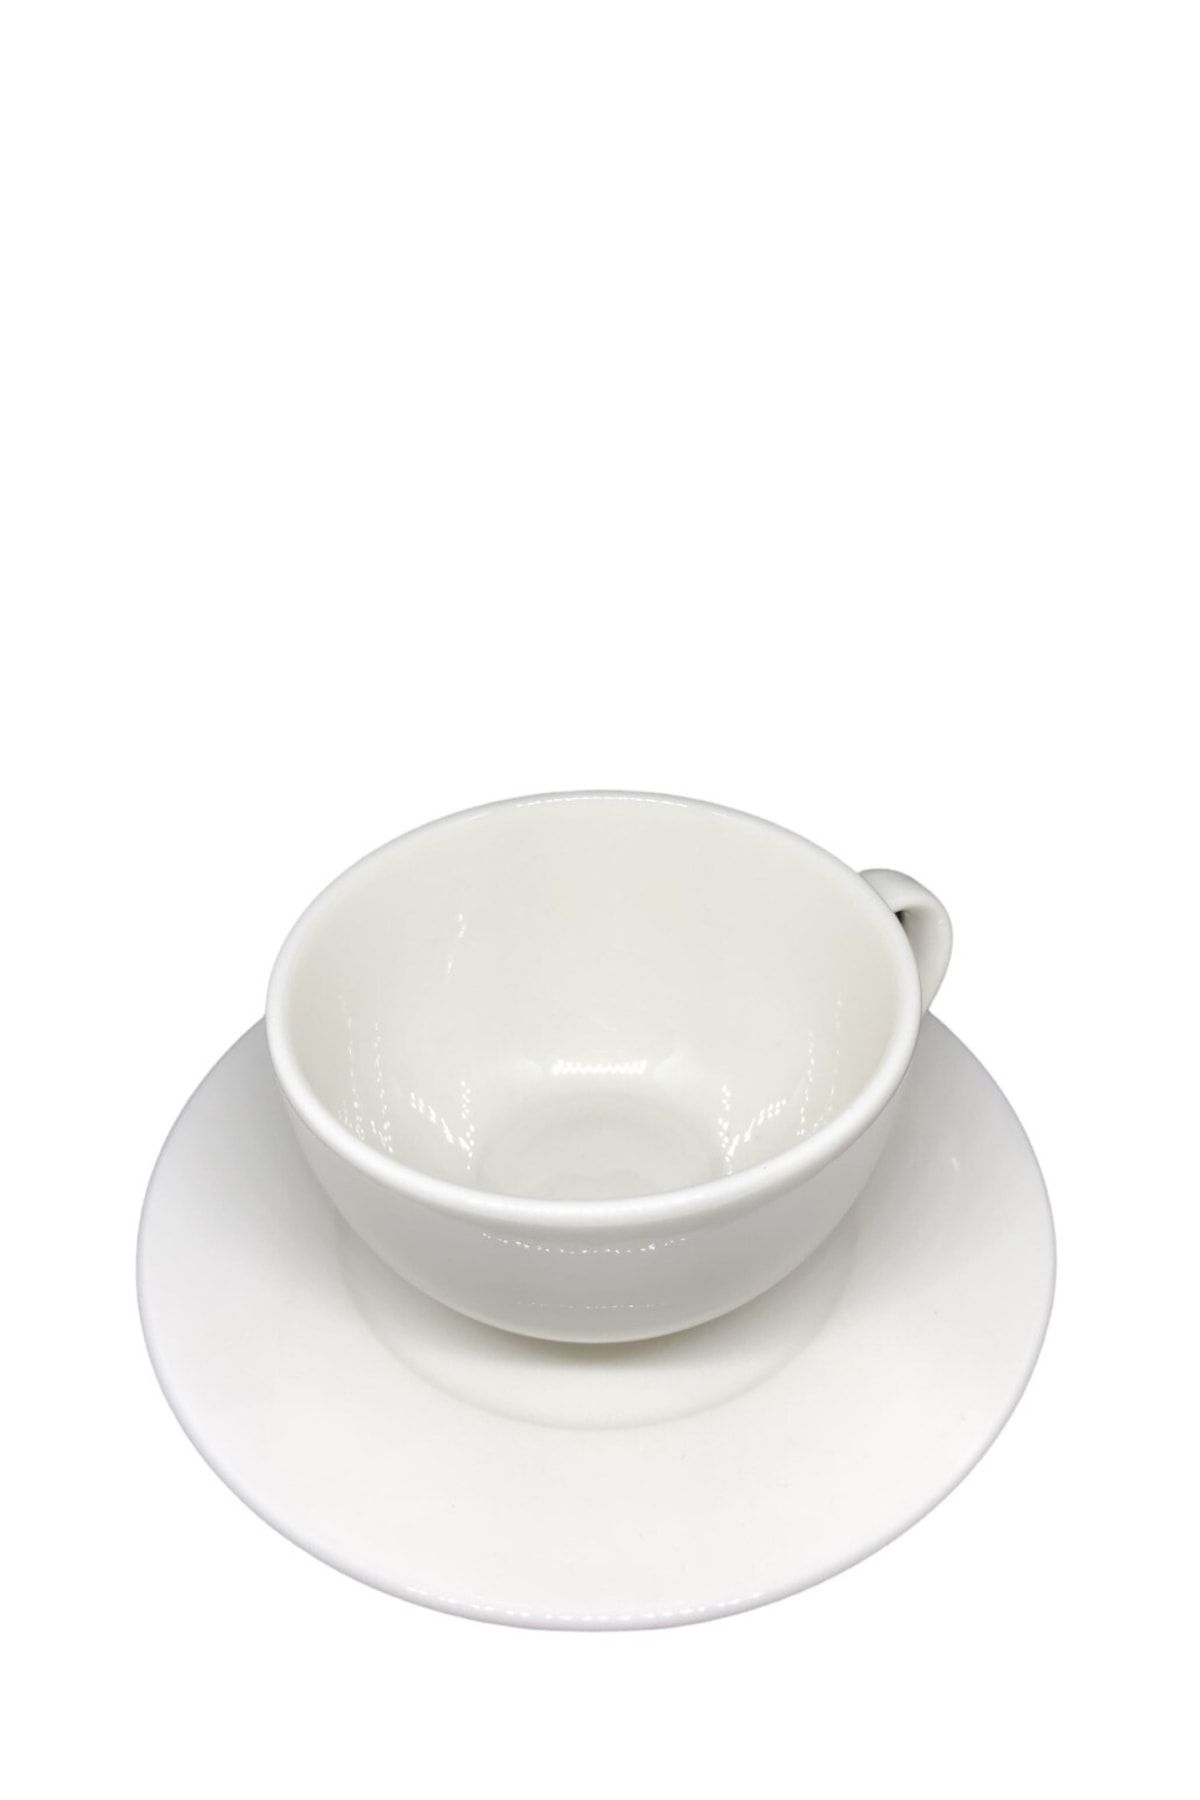 Güral Porselen Cappuccino Bardağı Krem 12 Takım